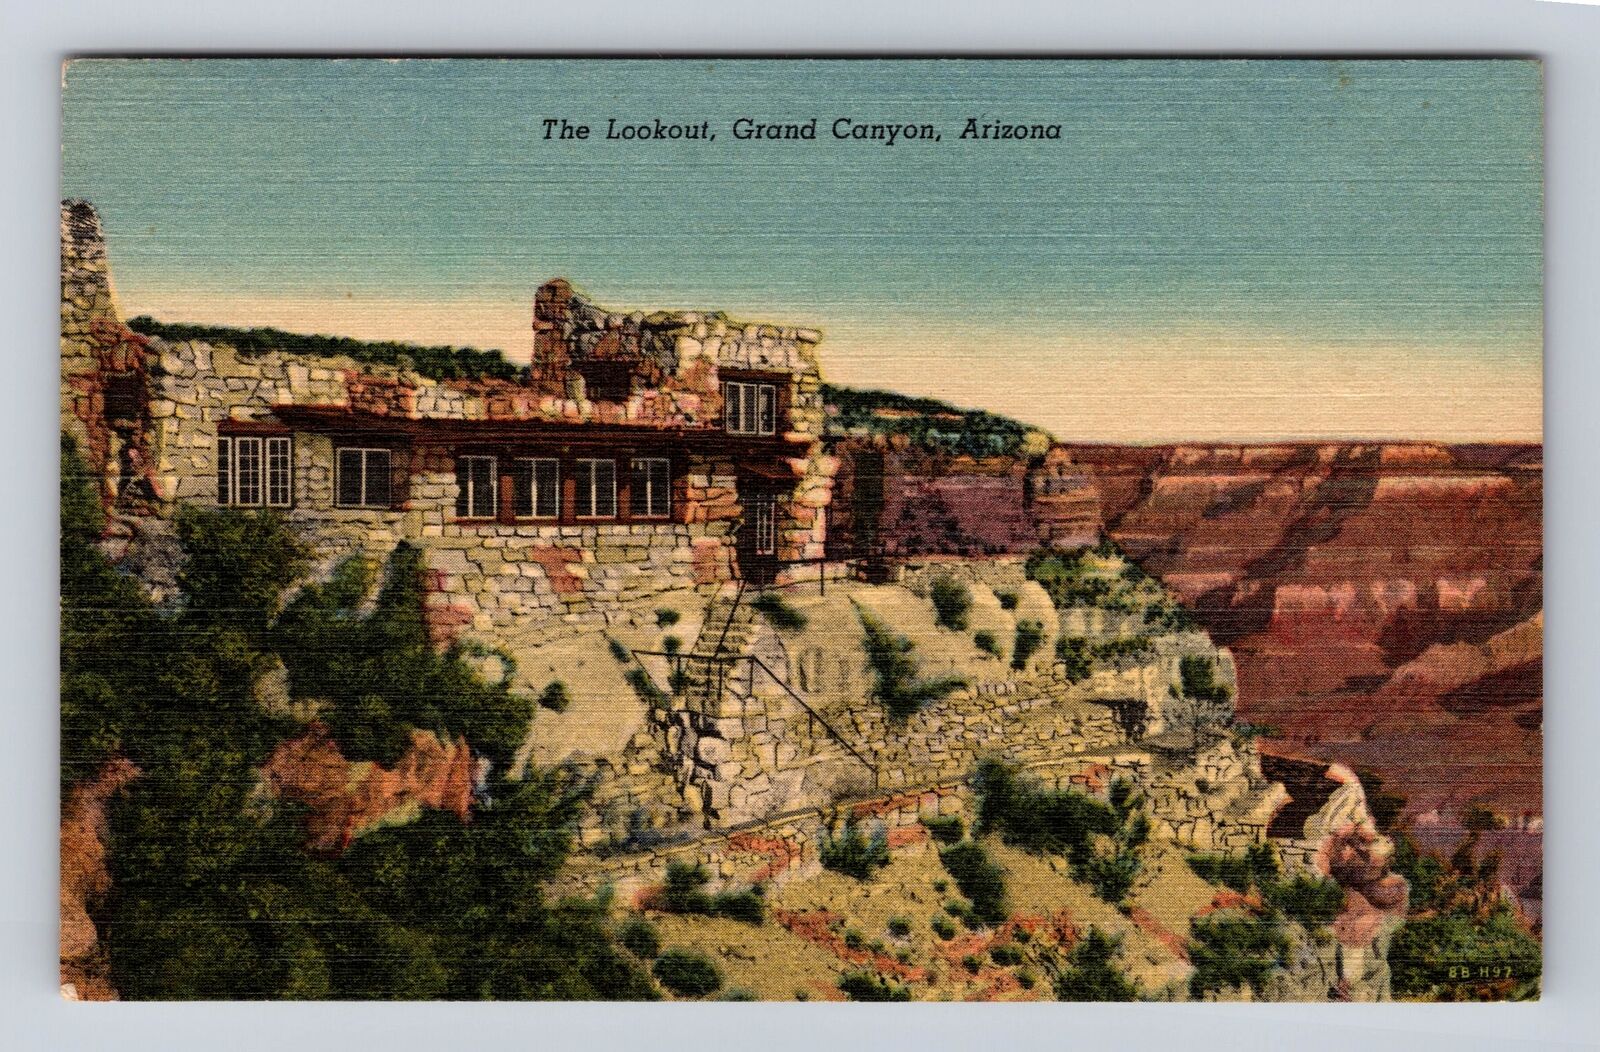 Grand Canyon National Park, the Lookout, Vintage Souvenir Postcard